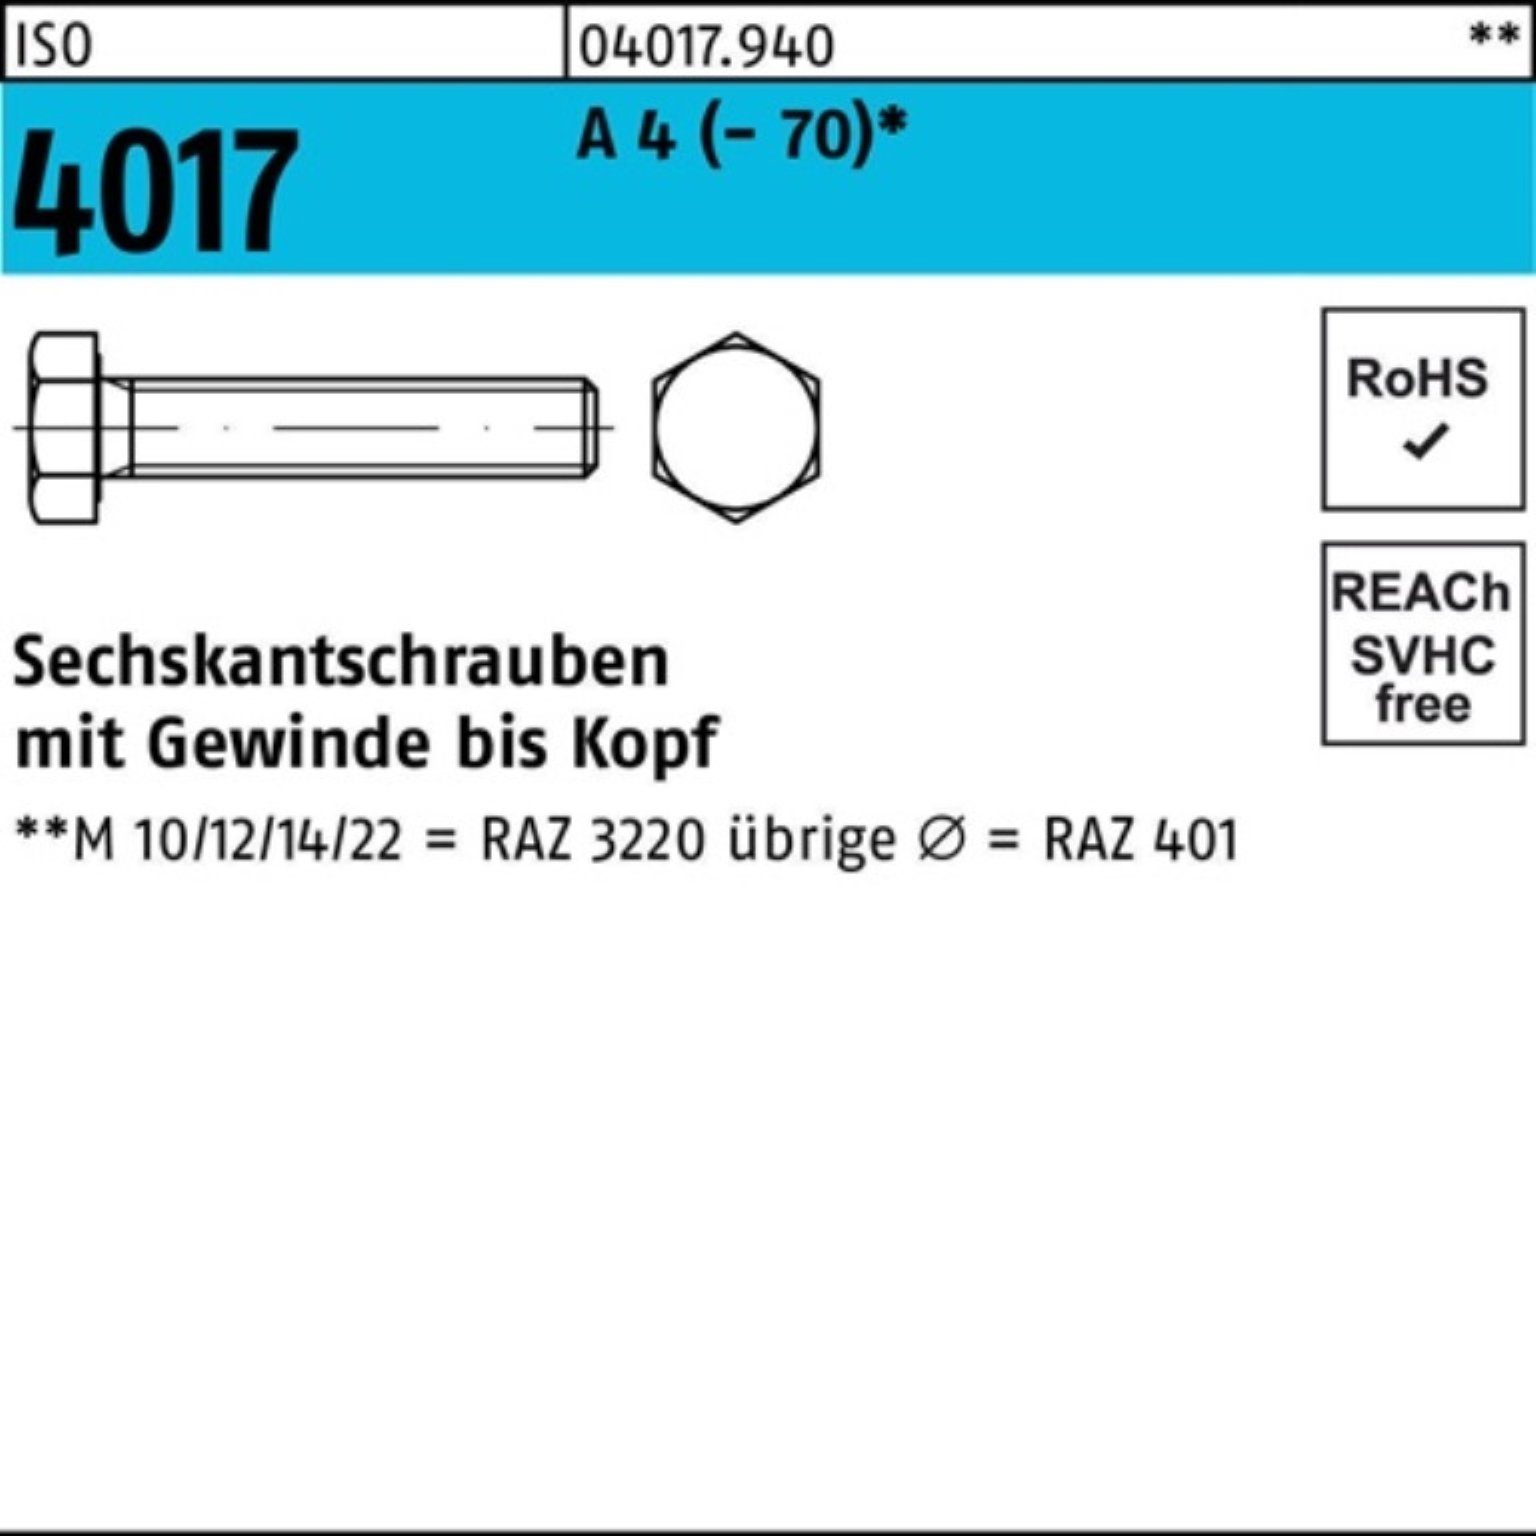 Bufab Sechskantschraube 100er Pack Sechskantschraube VG 4 (70) M6x 14 4017 A ISO 100 Stück